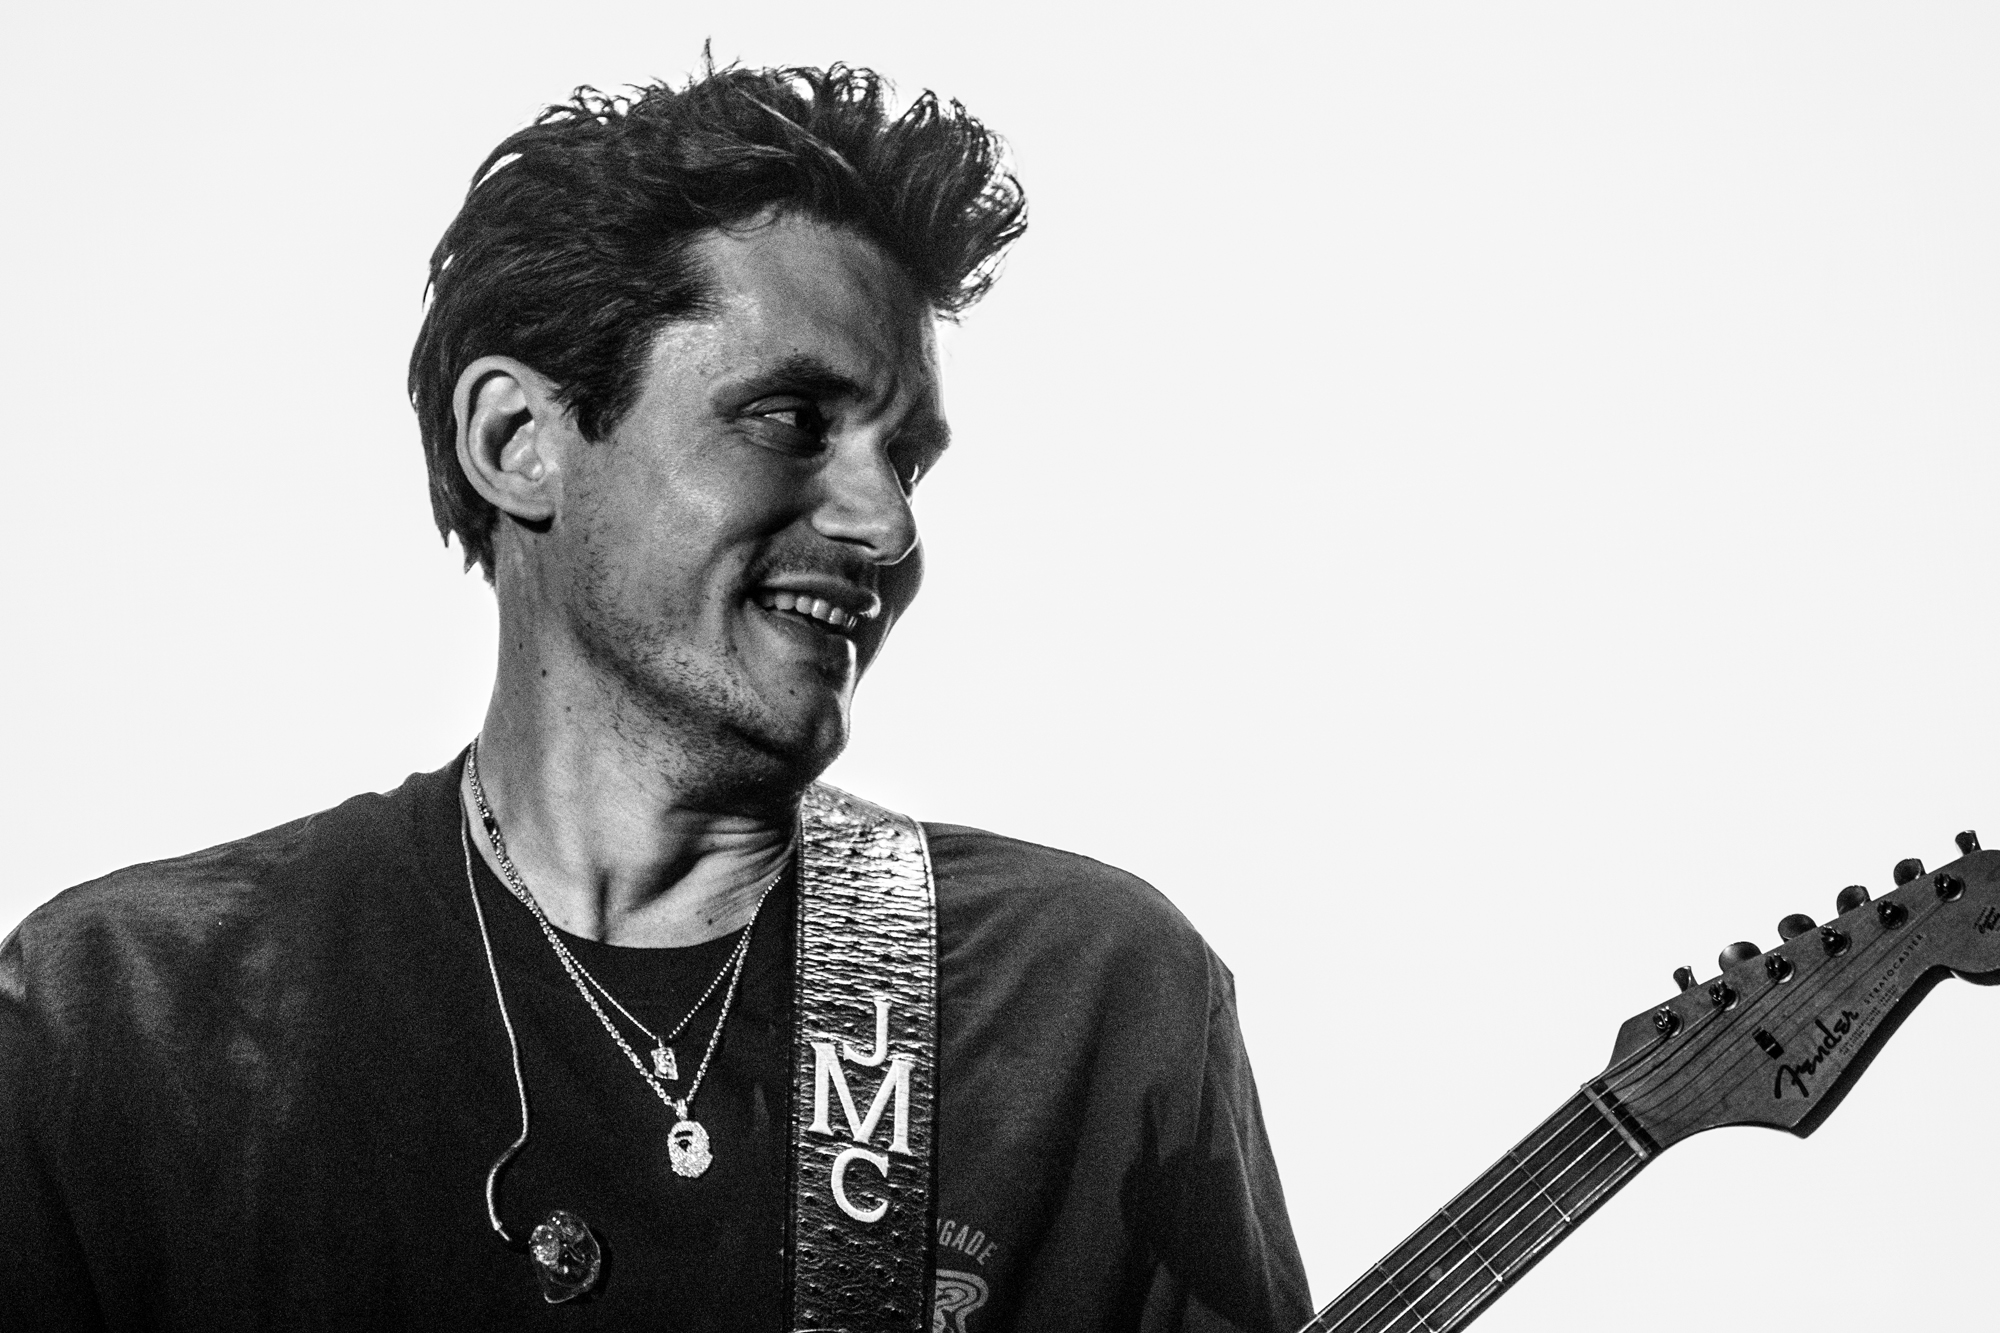 “Everyone’s gonna freak out”: Hvorfor du skal lytte til John Mayer   